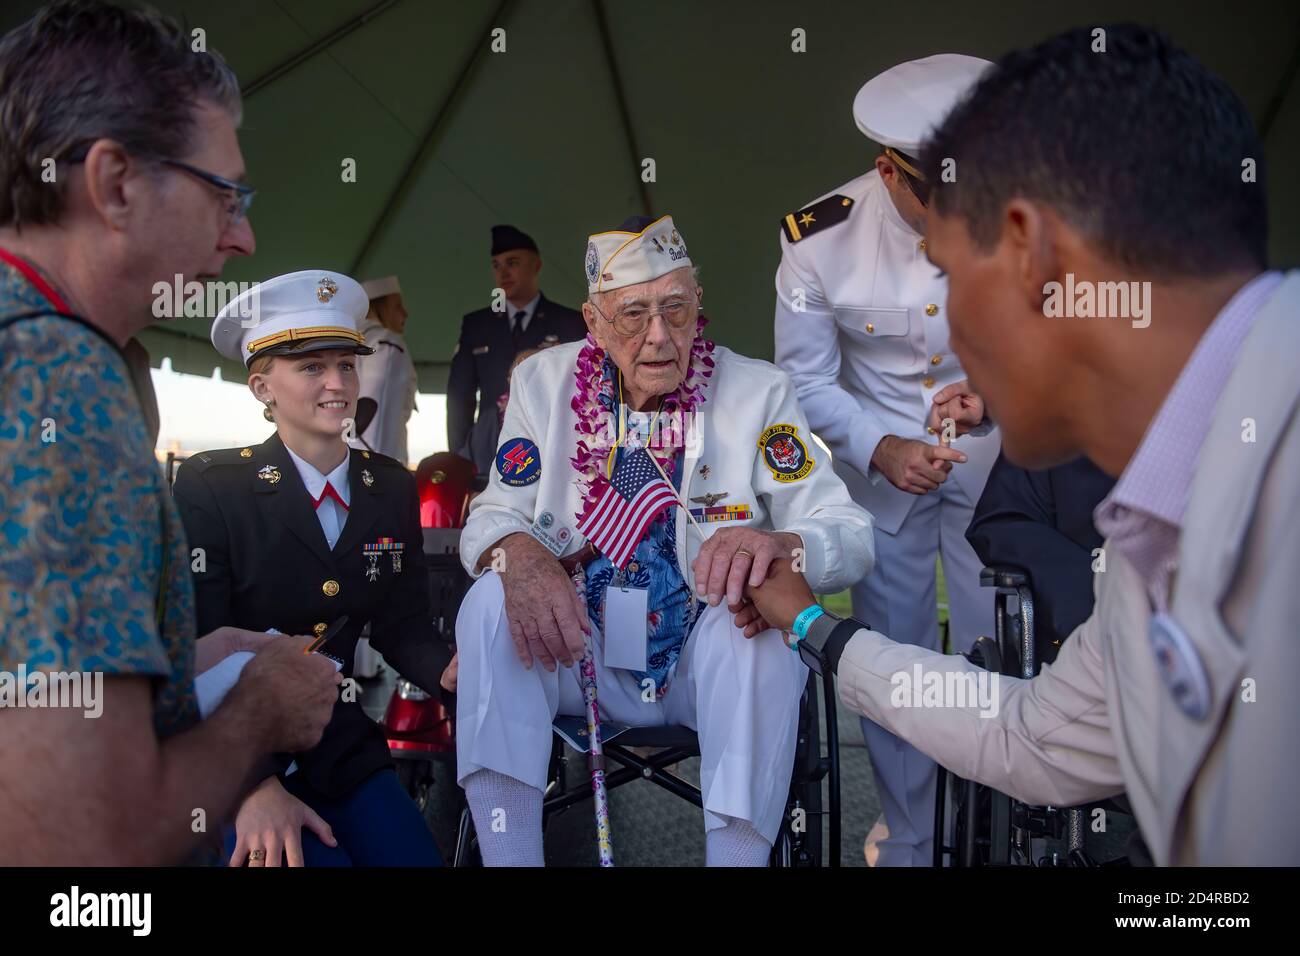 191207-N-XG173-1585 PEARL HARBOR (DEZ. 7, 2019) der Pearl Harbor-Überlebende Don Long erhält während des Gedenkens an die Erinnerung an Pearl Harbor zum 78. Jahrestag eine amerikanische Flagge. Die Gedenkfeier bot Dienstmitgliedern, Veteranen, Familienmitgliedern und der Gemeinschaft die Möglichkeit, die Opfer zu würdigen, die von denen, die am 7. Dezember 1941 anwesend waren, erbracht wurden. Seit den Anschlägen haben die USA und Japan mehr als 70 Jahre anhaltenden Friedens ertragen. (USA Navy-Foto von Mass Communication Specialist 3. Klasse Aja B. Jackson/Veröffentlicht) Stockfoto